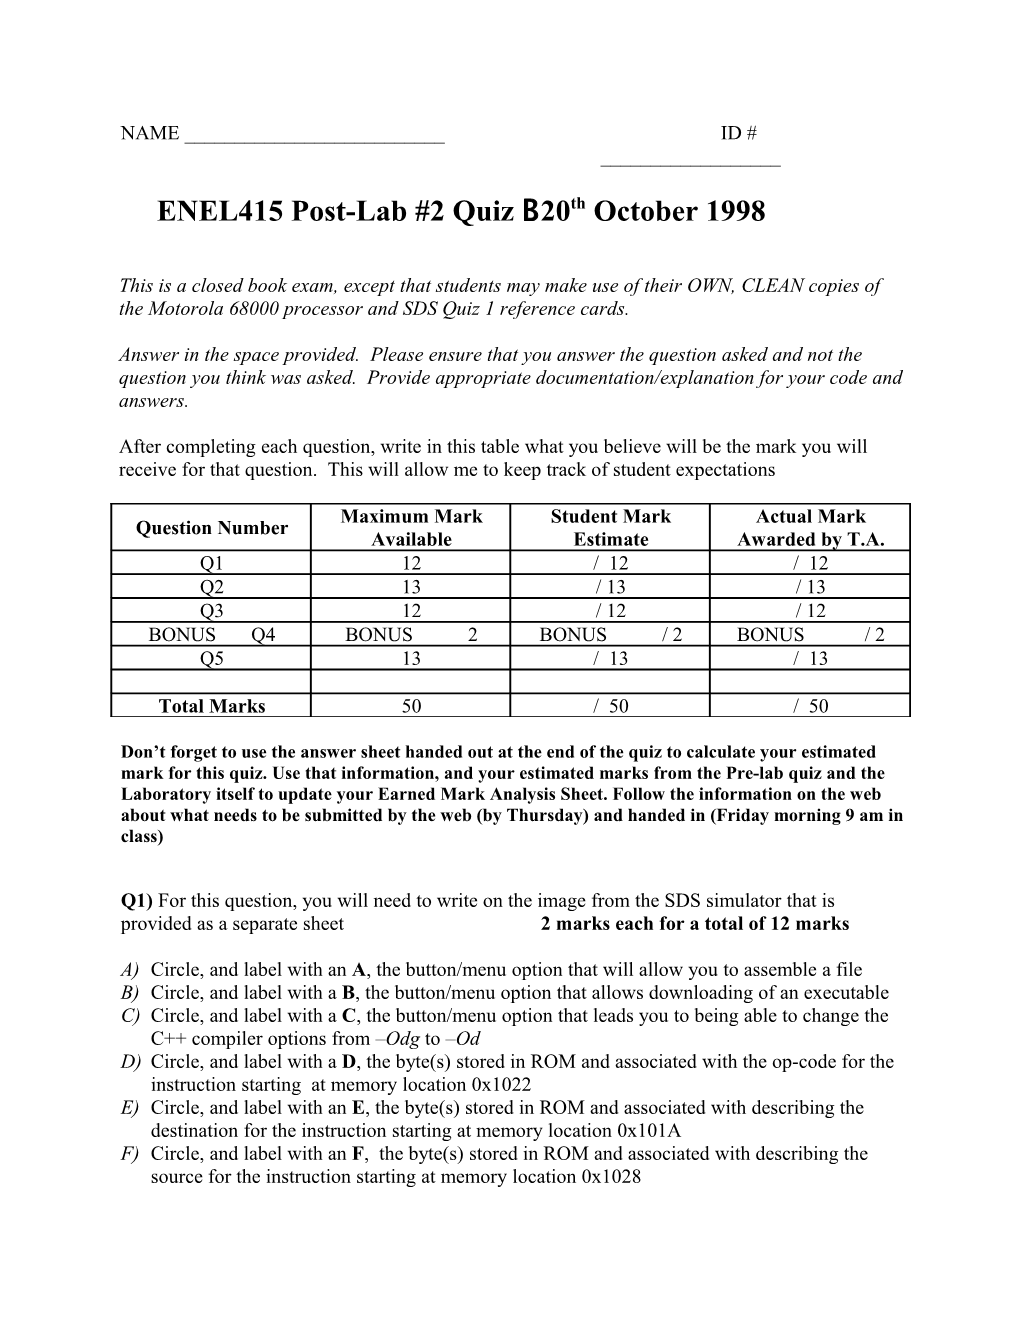 ENEL415 Post-Lab #2 Quiz B 20Th October 1998